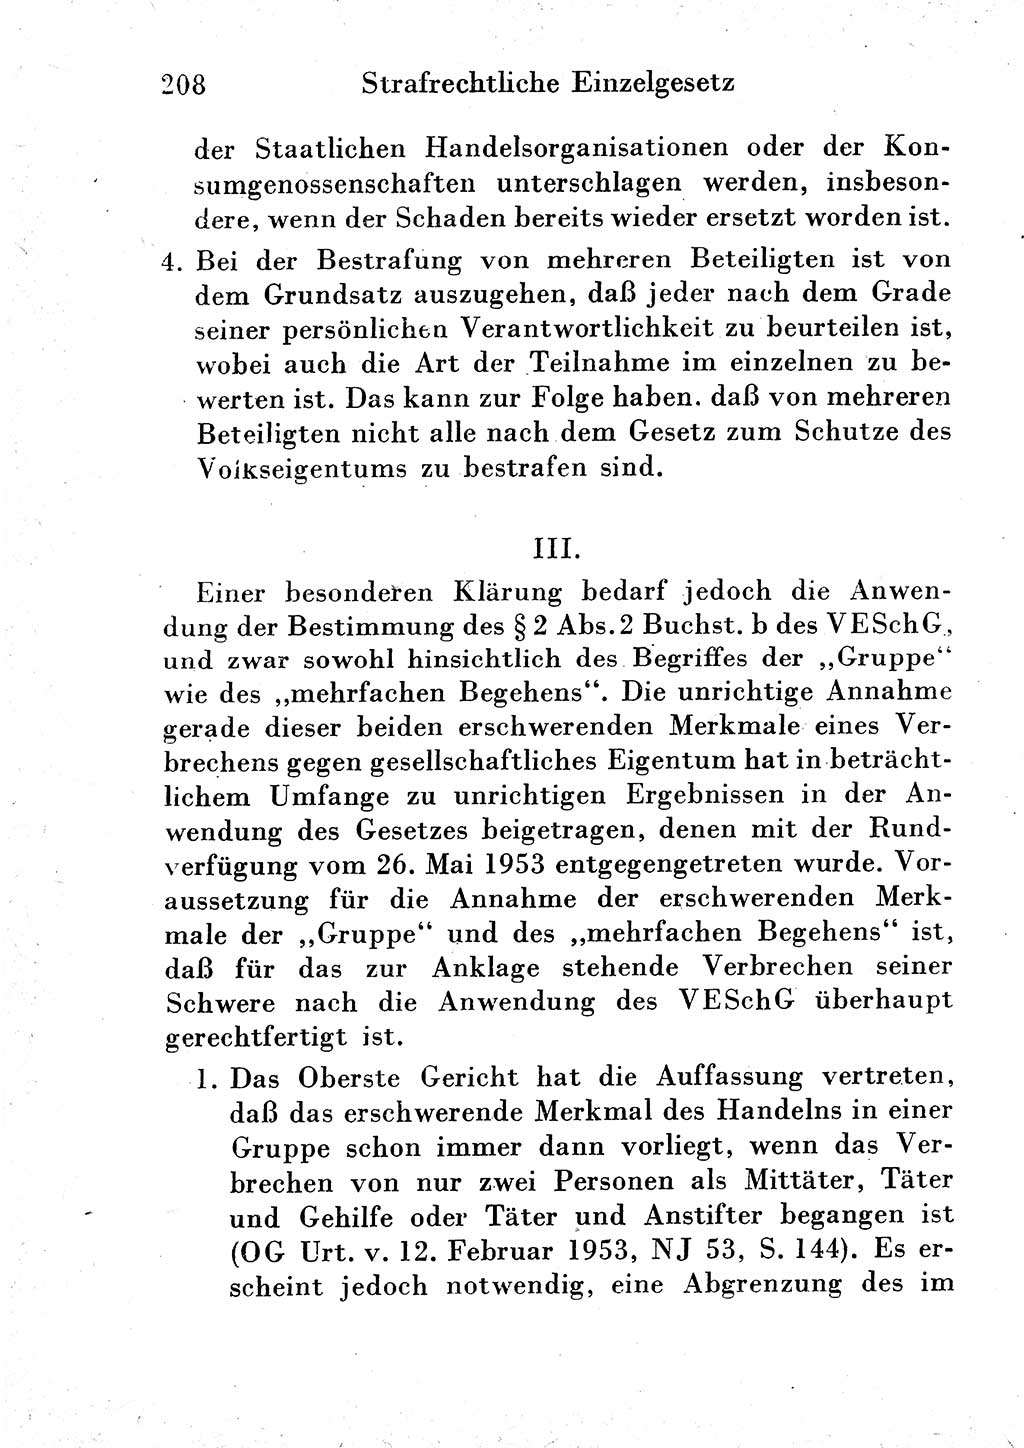 Strafgesetzbuch (StGB) und andere Strafgesetze [Deutsche Demokratische Republik (DDR)] 1954, Seite 208 (StGB Strafges. DDR 1954, S. 208)